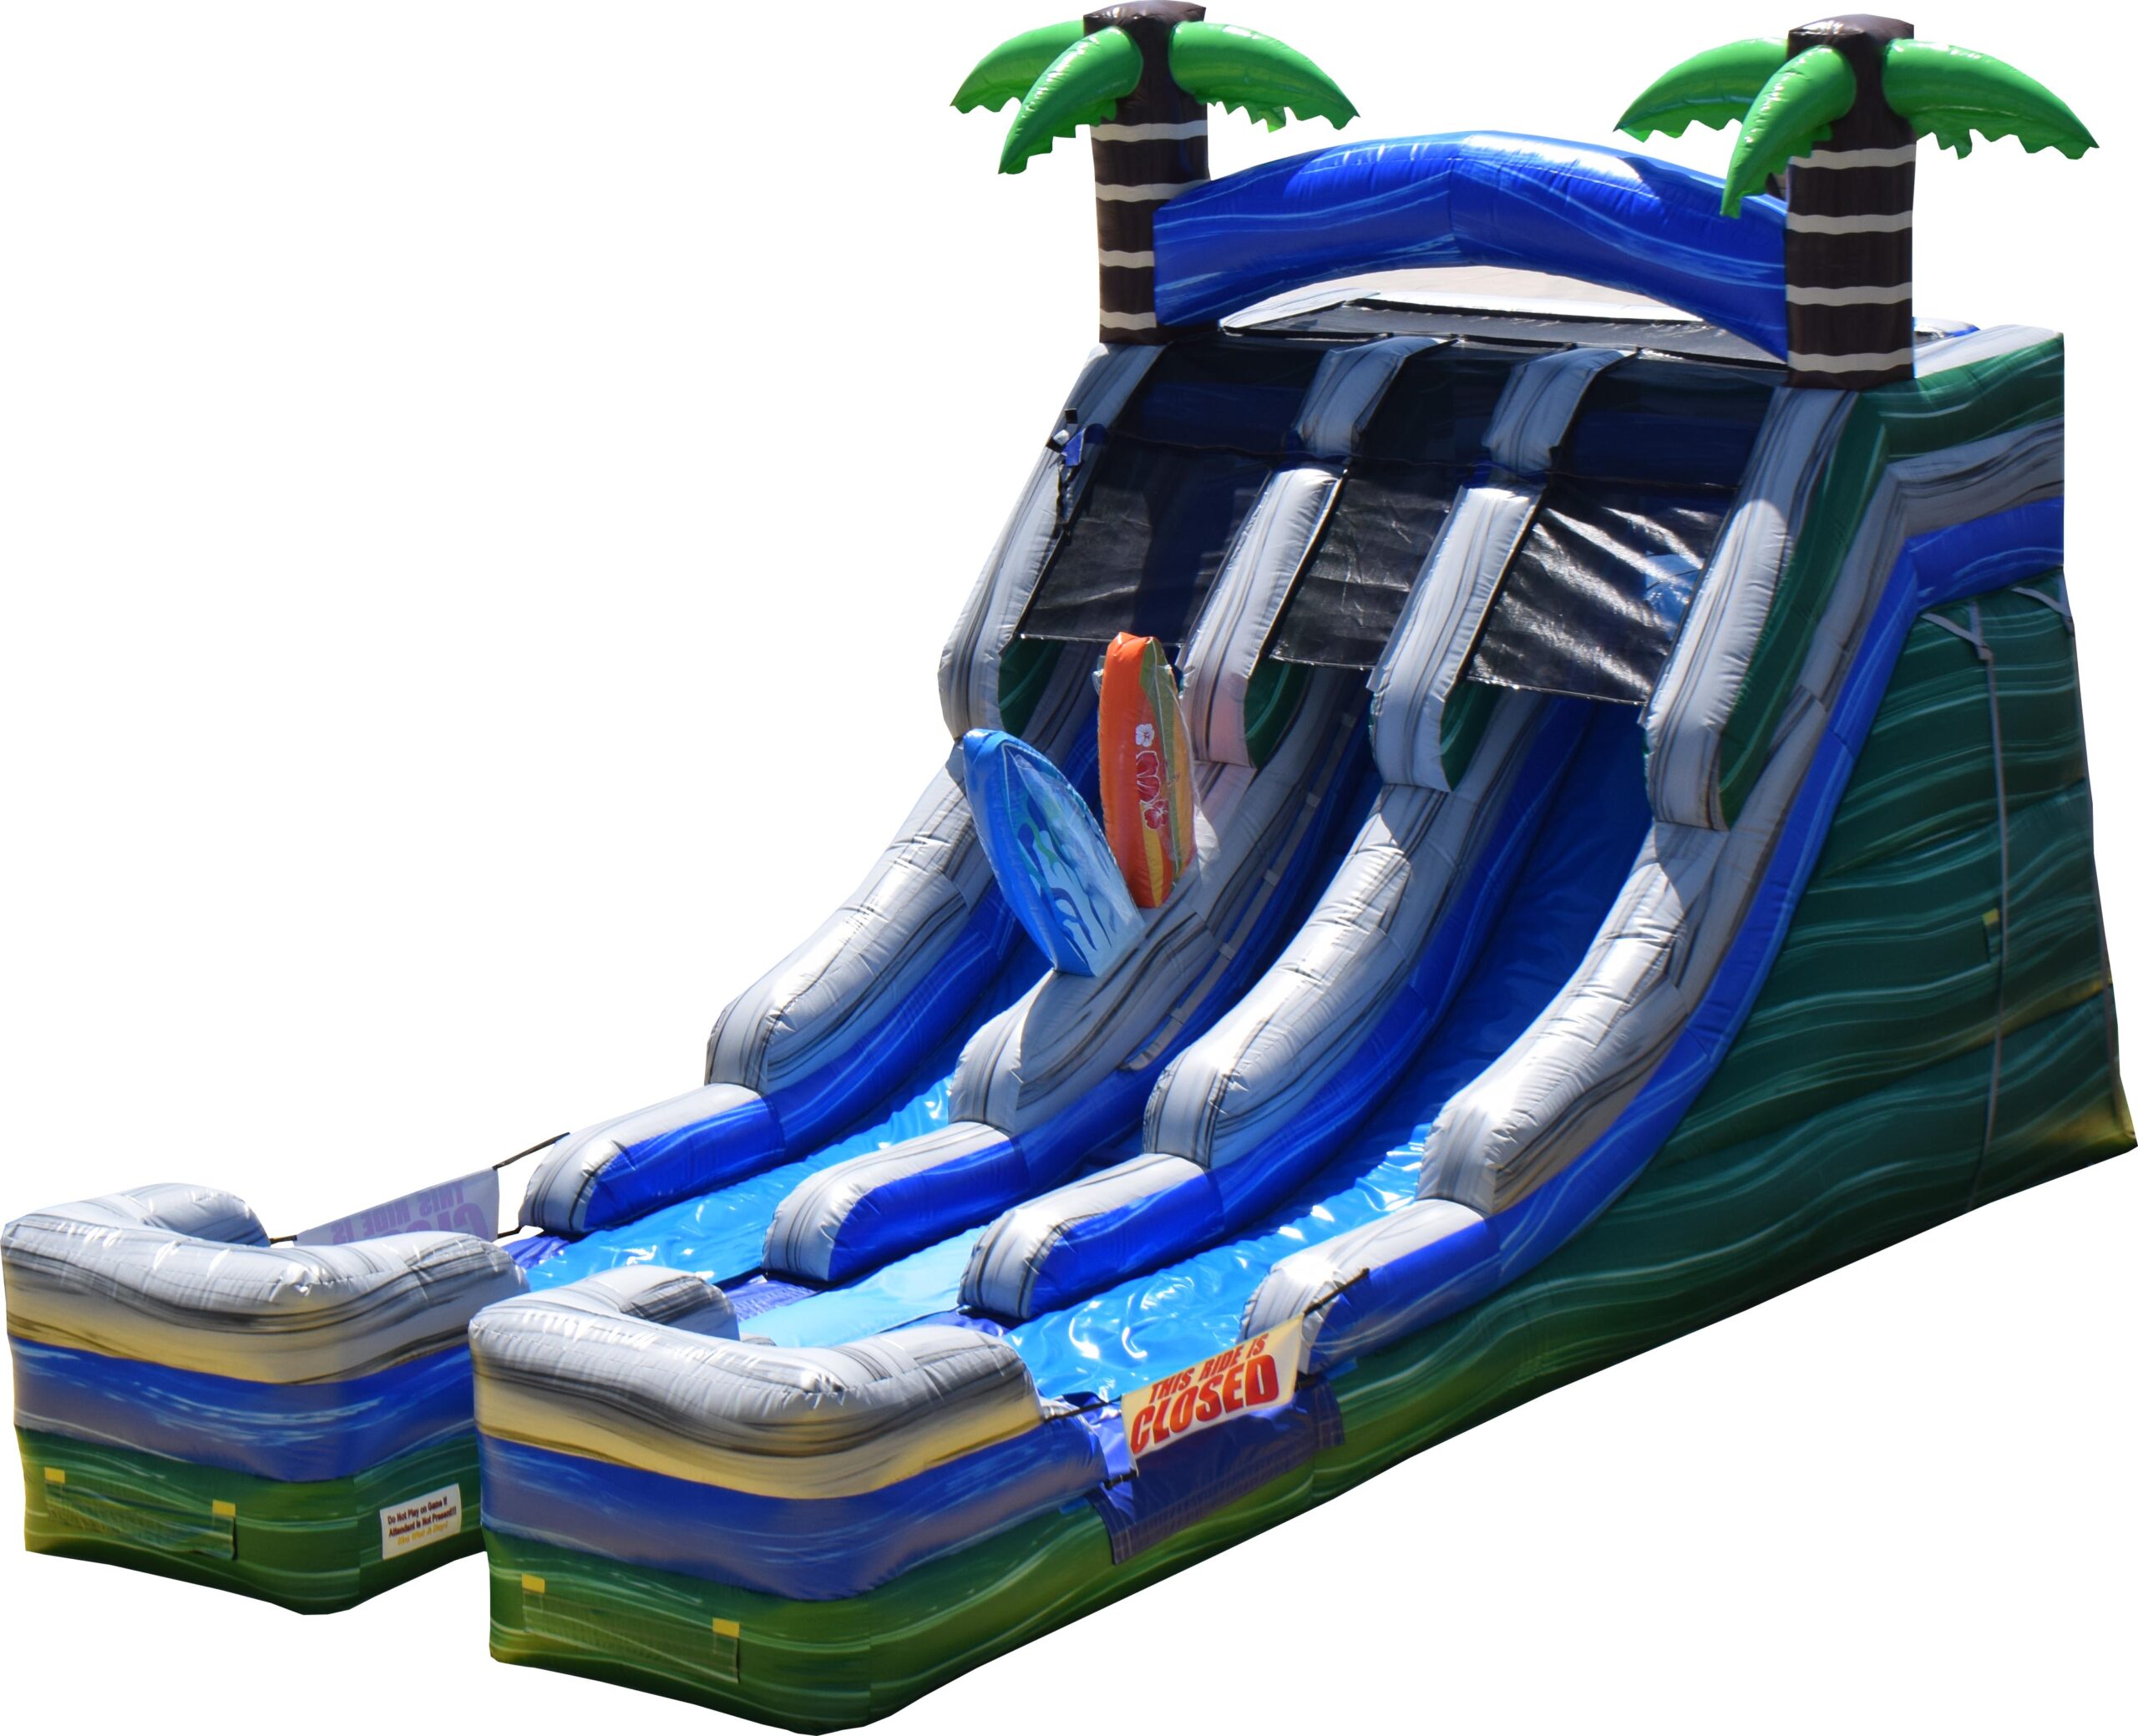 Surfs Up Slide - Mount Dora Inflatable - Bounce House Rental